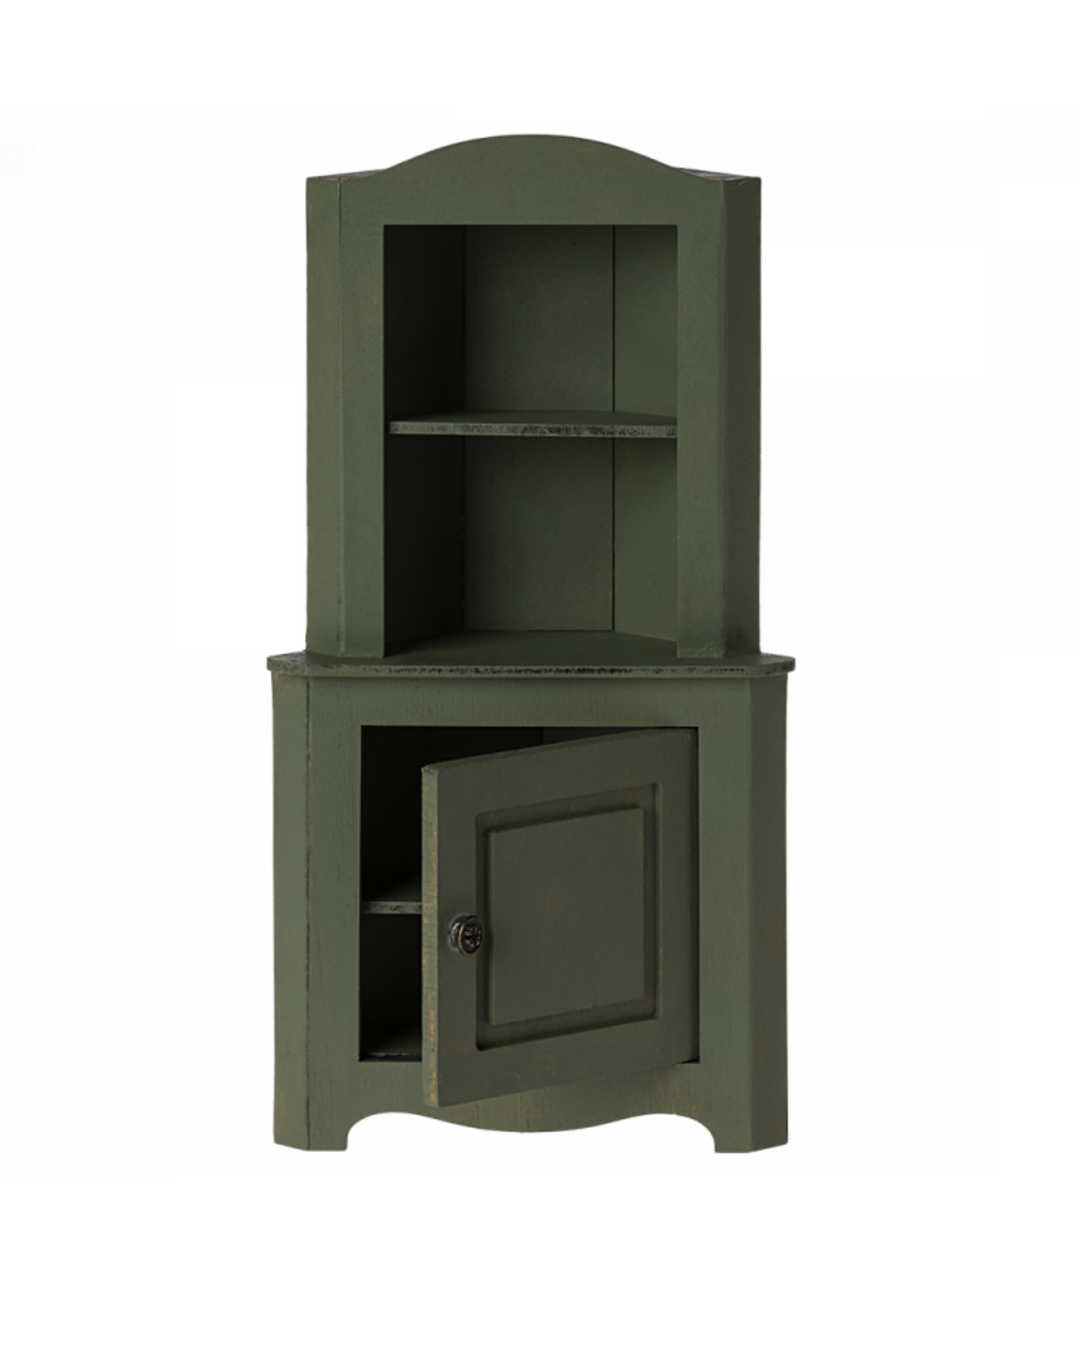 Maileg Miniature Corner Cabinet - Dark Green: Dollhouse Essential